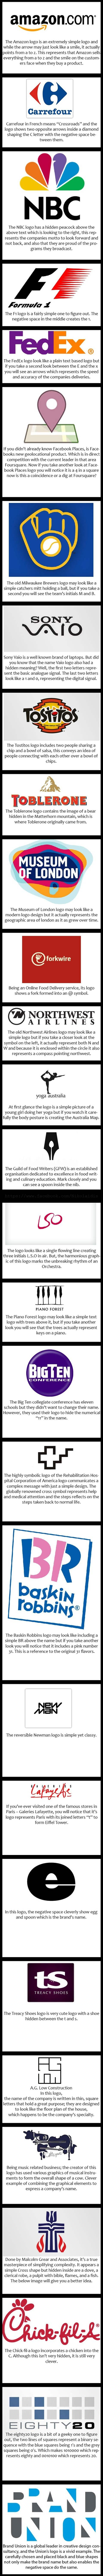 Logos logos and more logos.